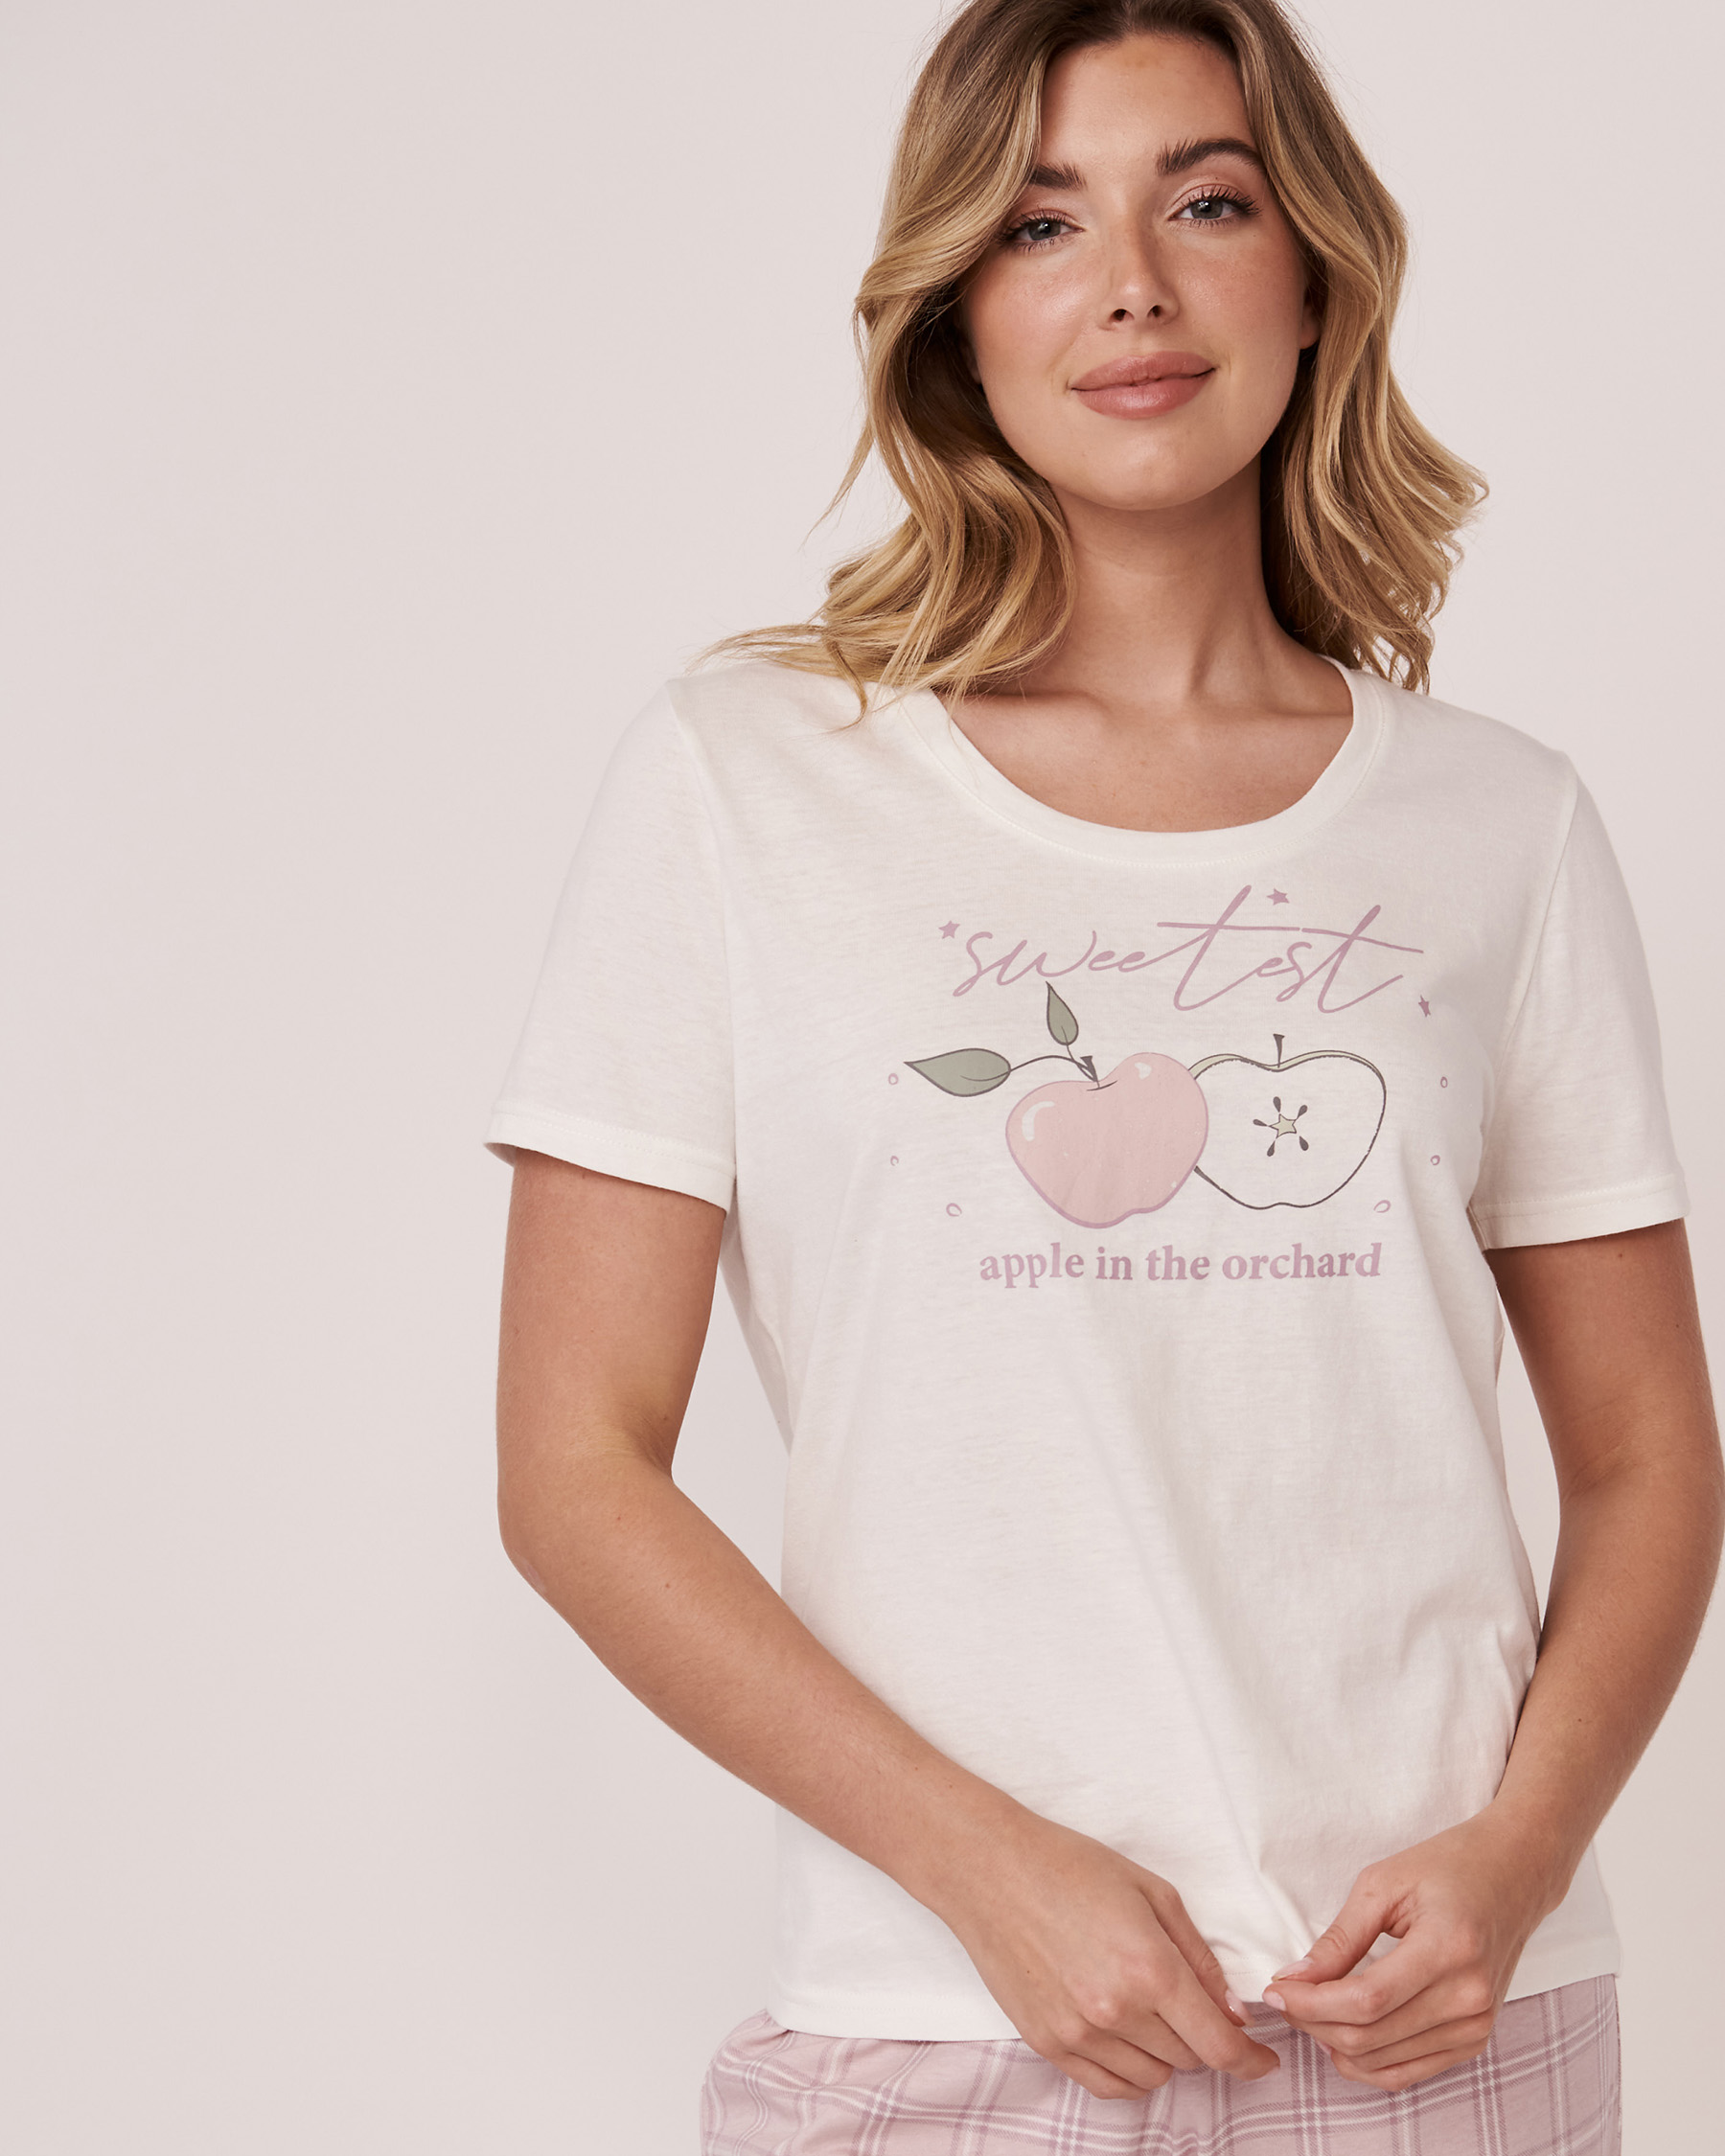 La Vie en Rose Cotton Crew Neck T-shirt. 1